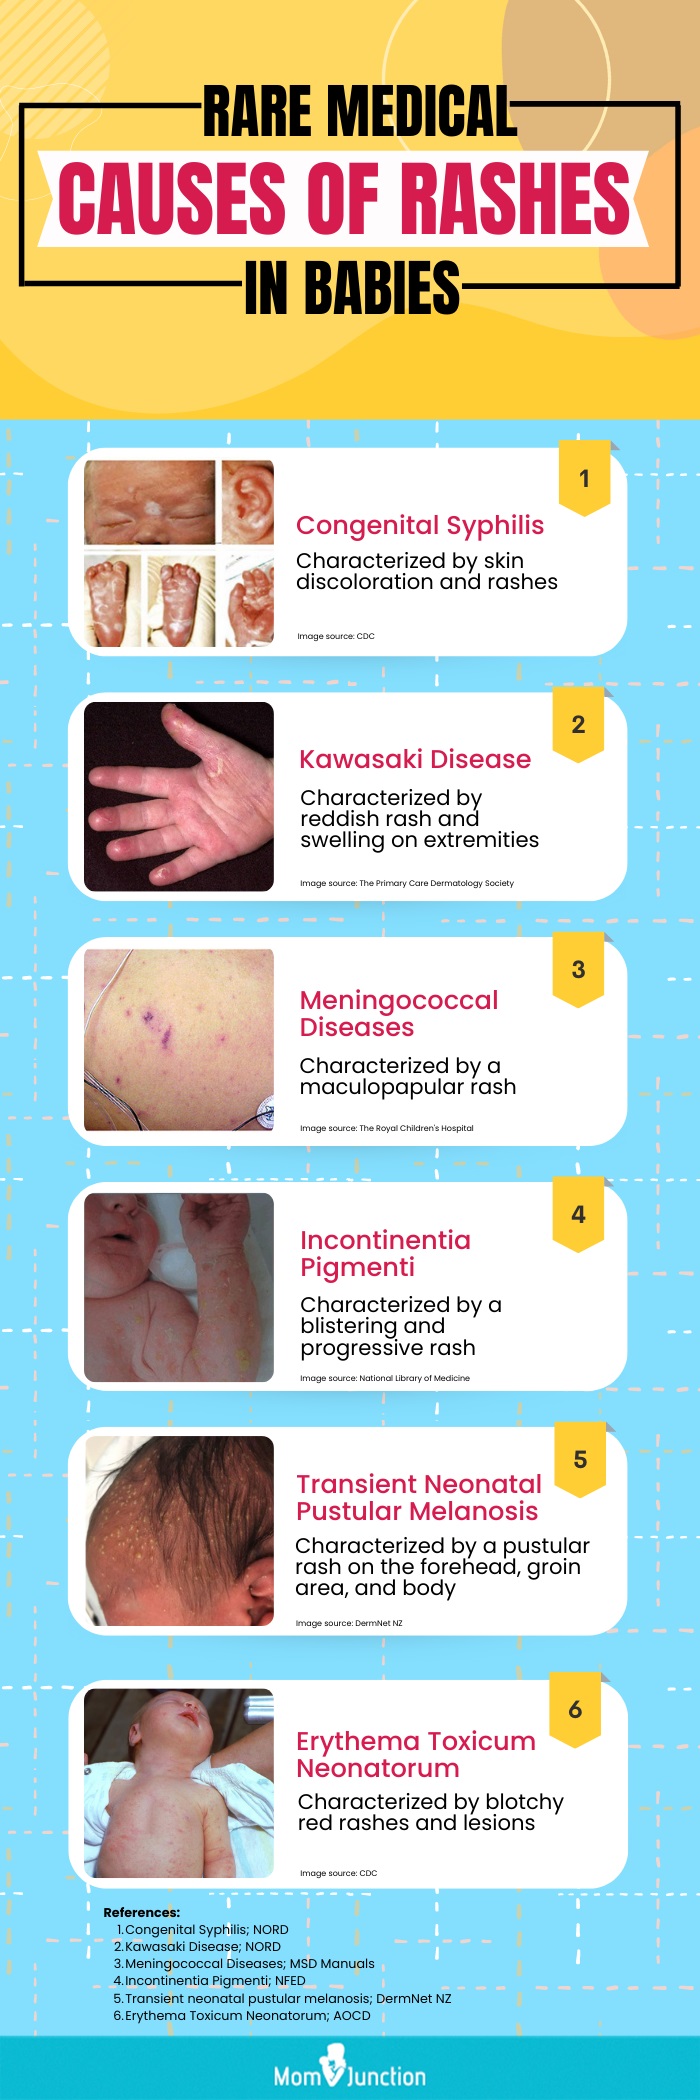 婴儿皮疹的罕见医学原因(信息图)